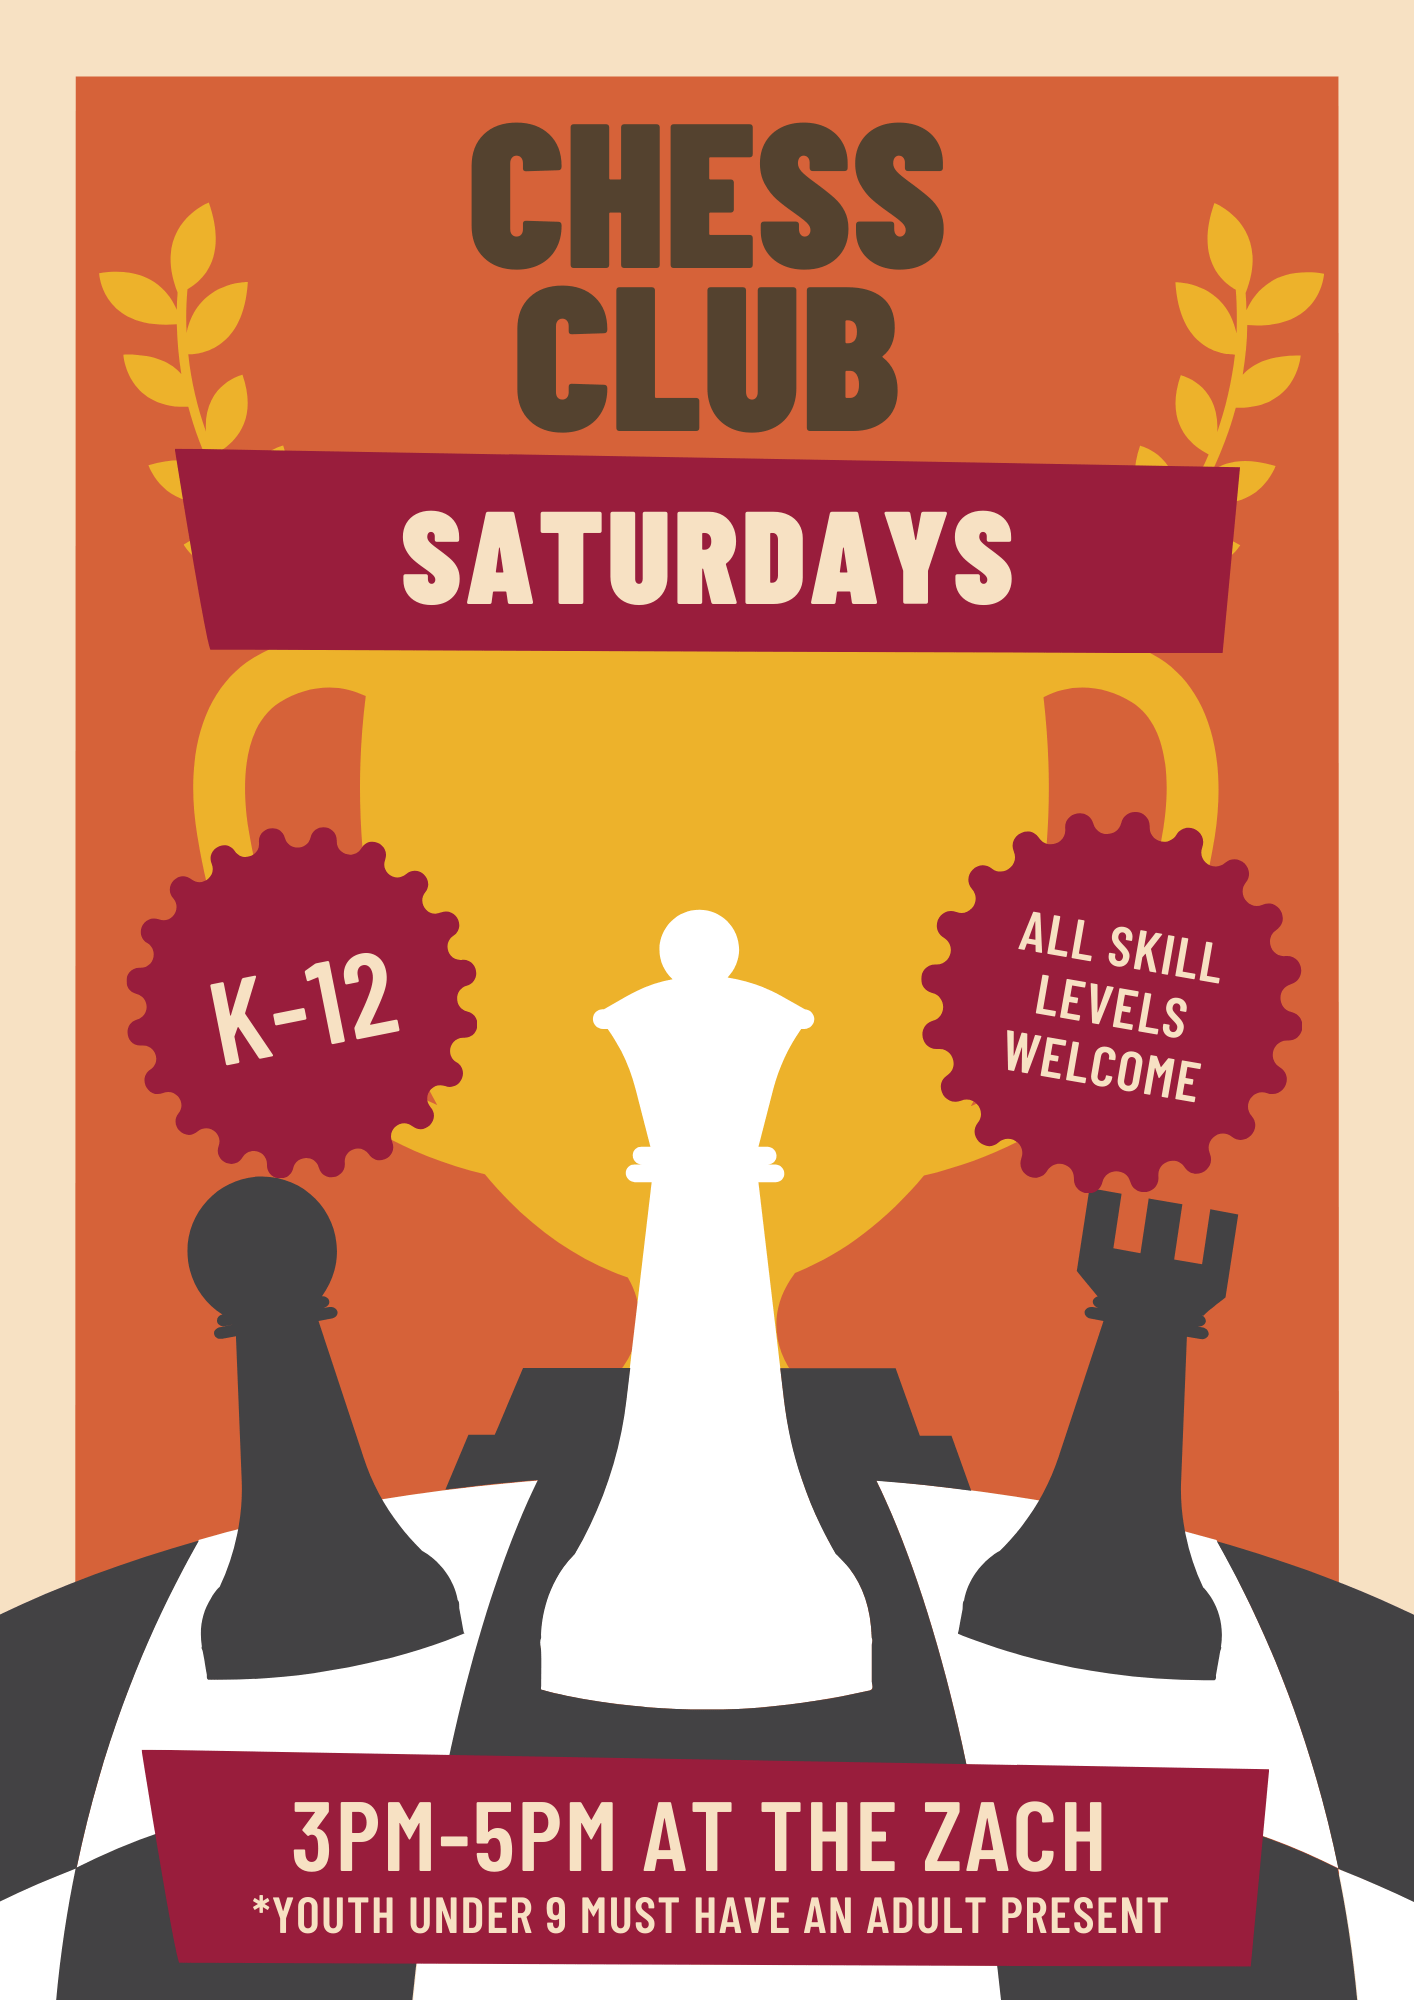 Chess club flyer Saturdays form 3-5